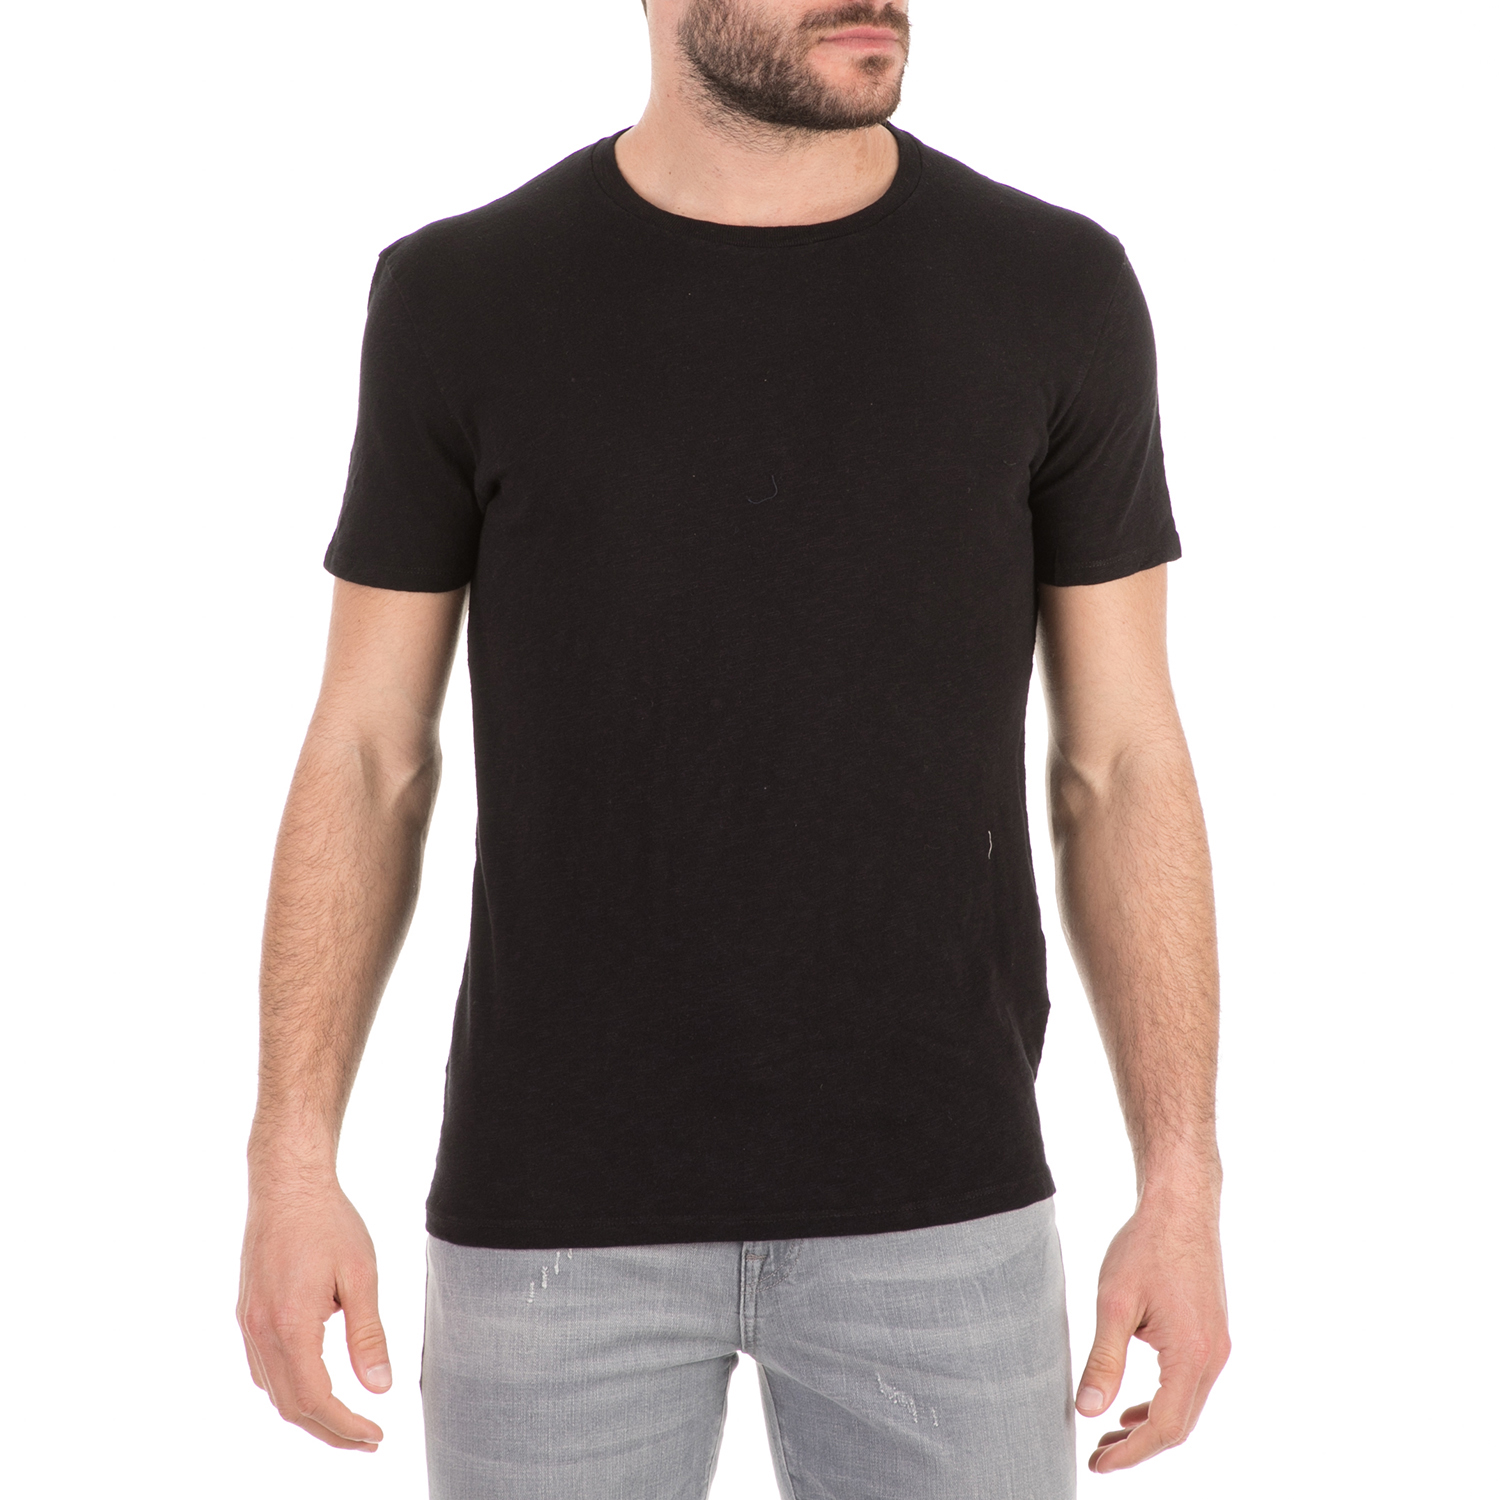 Ανδρικά/Ρούχα/Μπλούζες/Κοντομάνικες AMERICAN VINTAGE - Ανδρικό t-shirt AMERICAN VINTAGE μαύρο